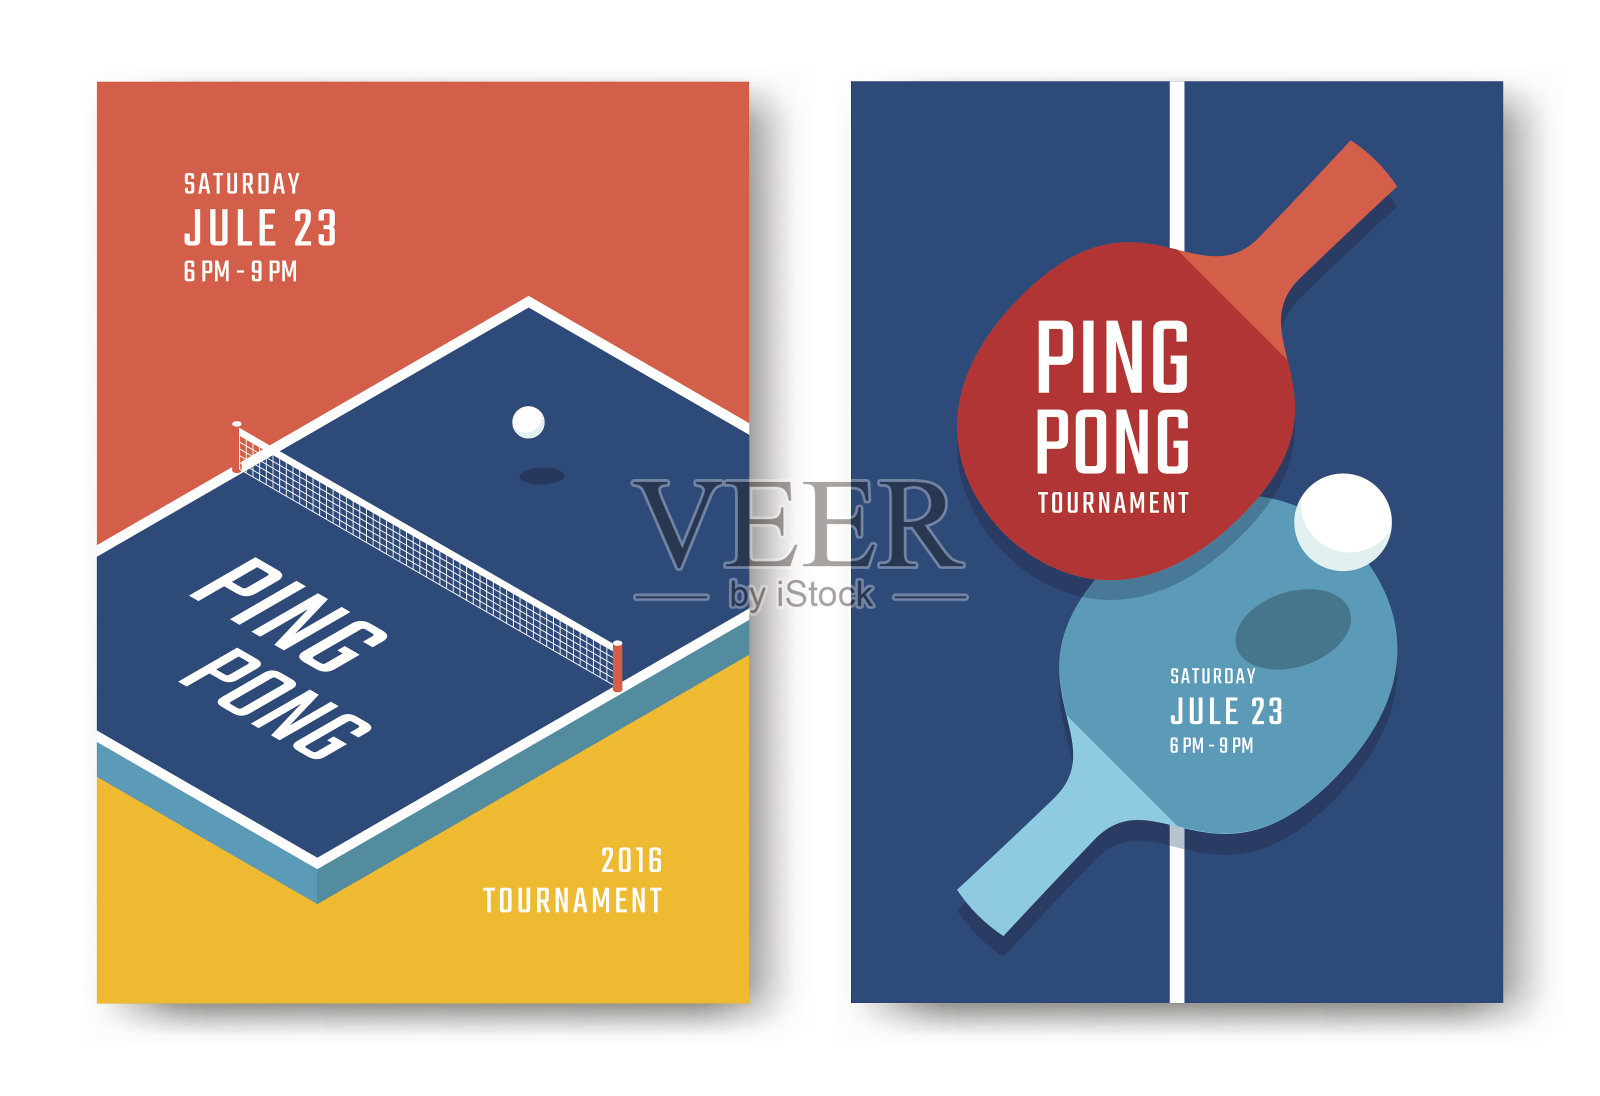 乒乓球的海报设计设计模板素材